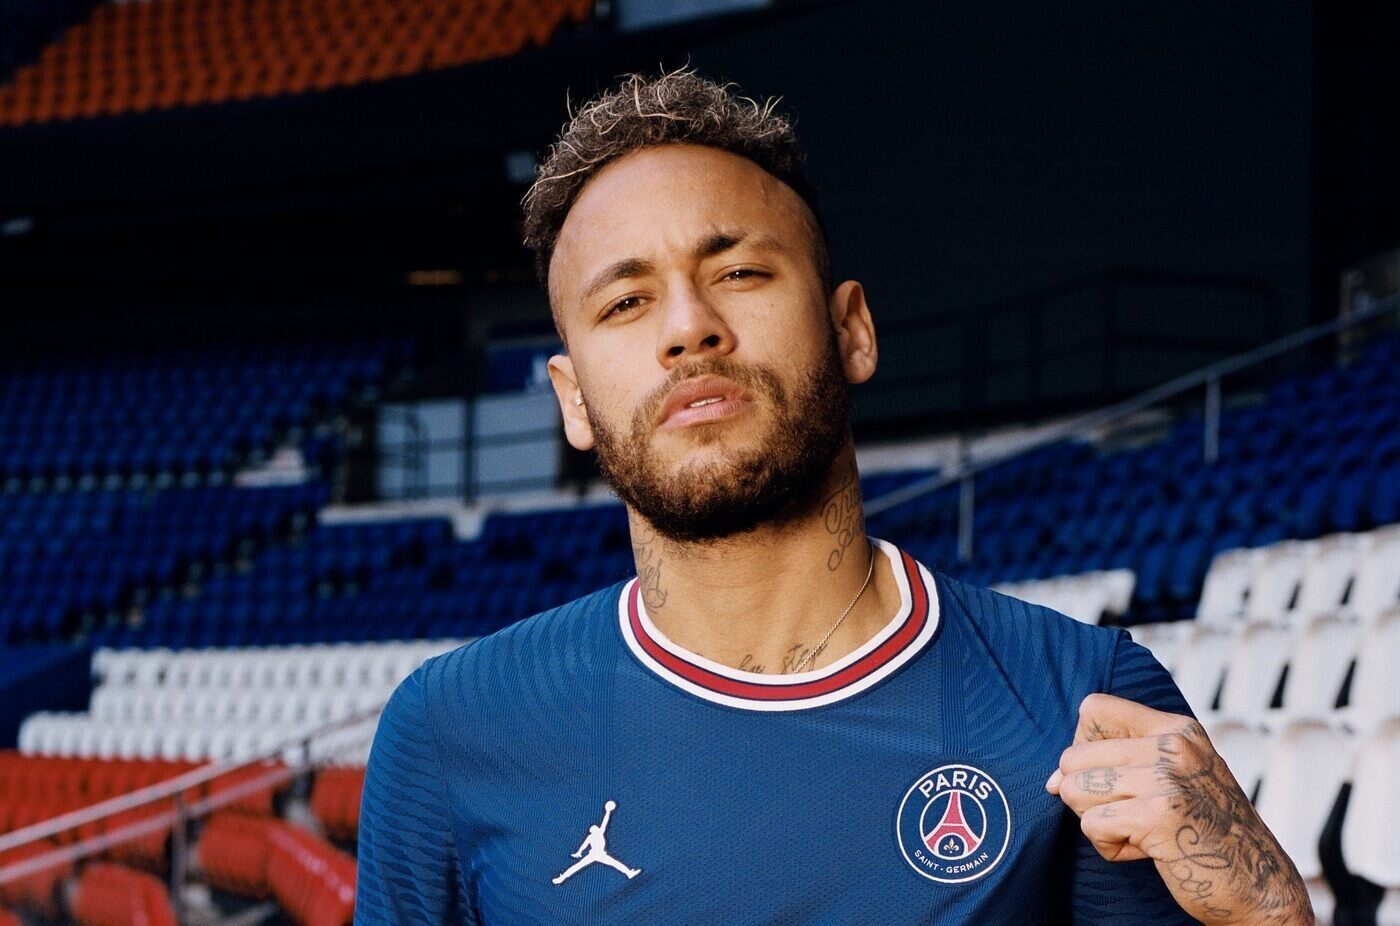 PSG x Reims AO VIVO: Veja o jogo que pode definir o título do Francês; Neymar é titular